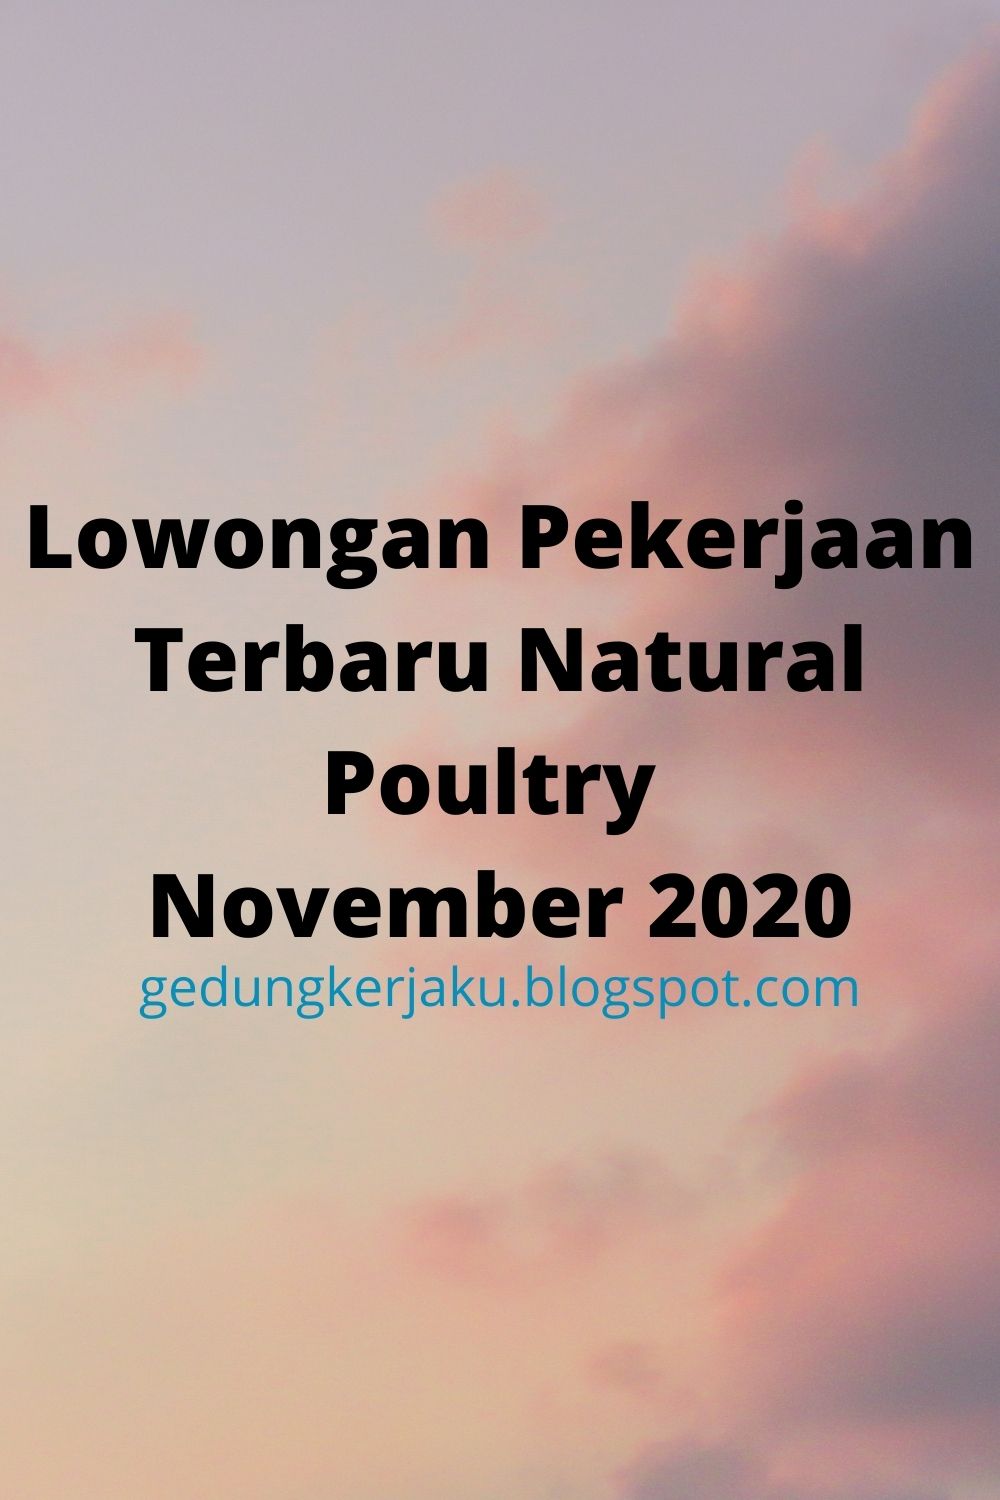 Lowongan Pekerjaan Terbaru Natural Poultry November 2020